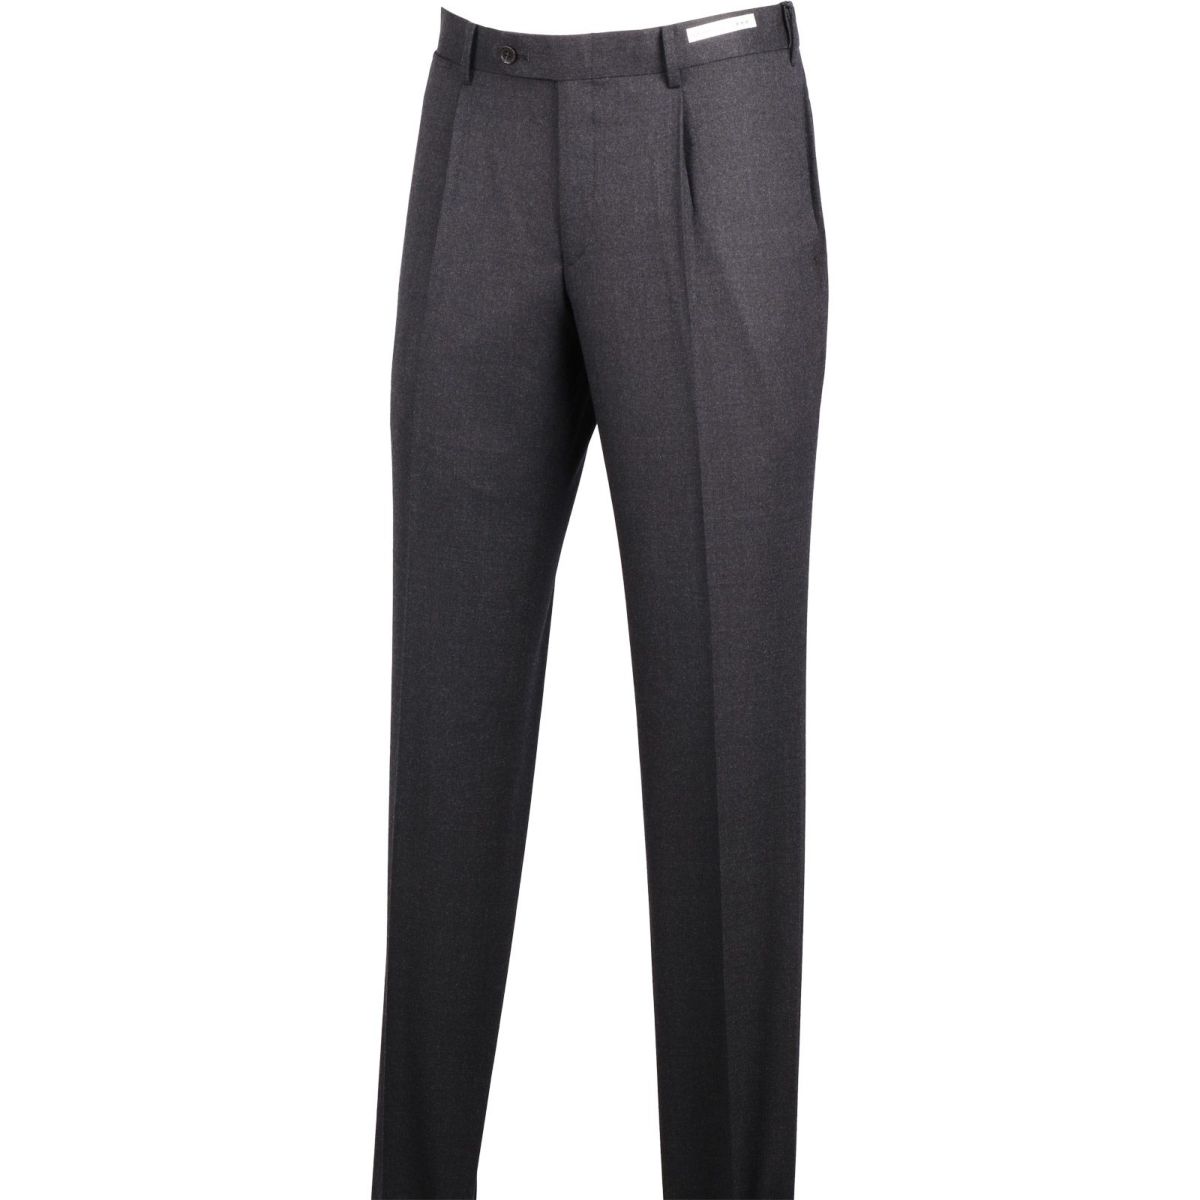 【CLASSICO TAPERED】ウールブレンドパンツ 1タック/ダークグレー スーツセレクト通販 suit select